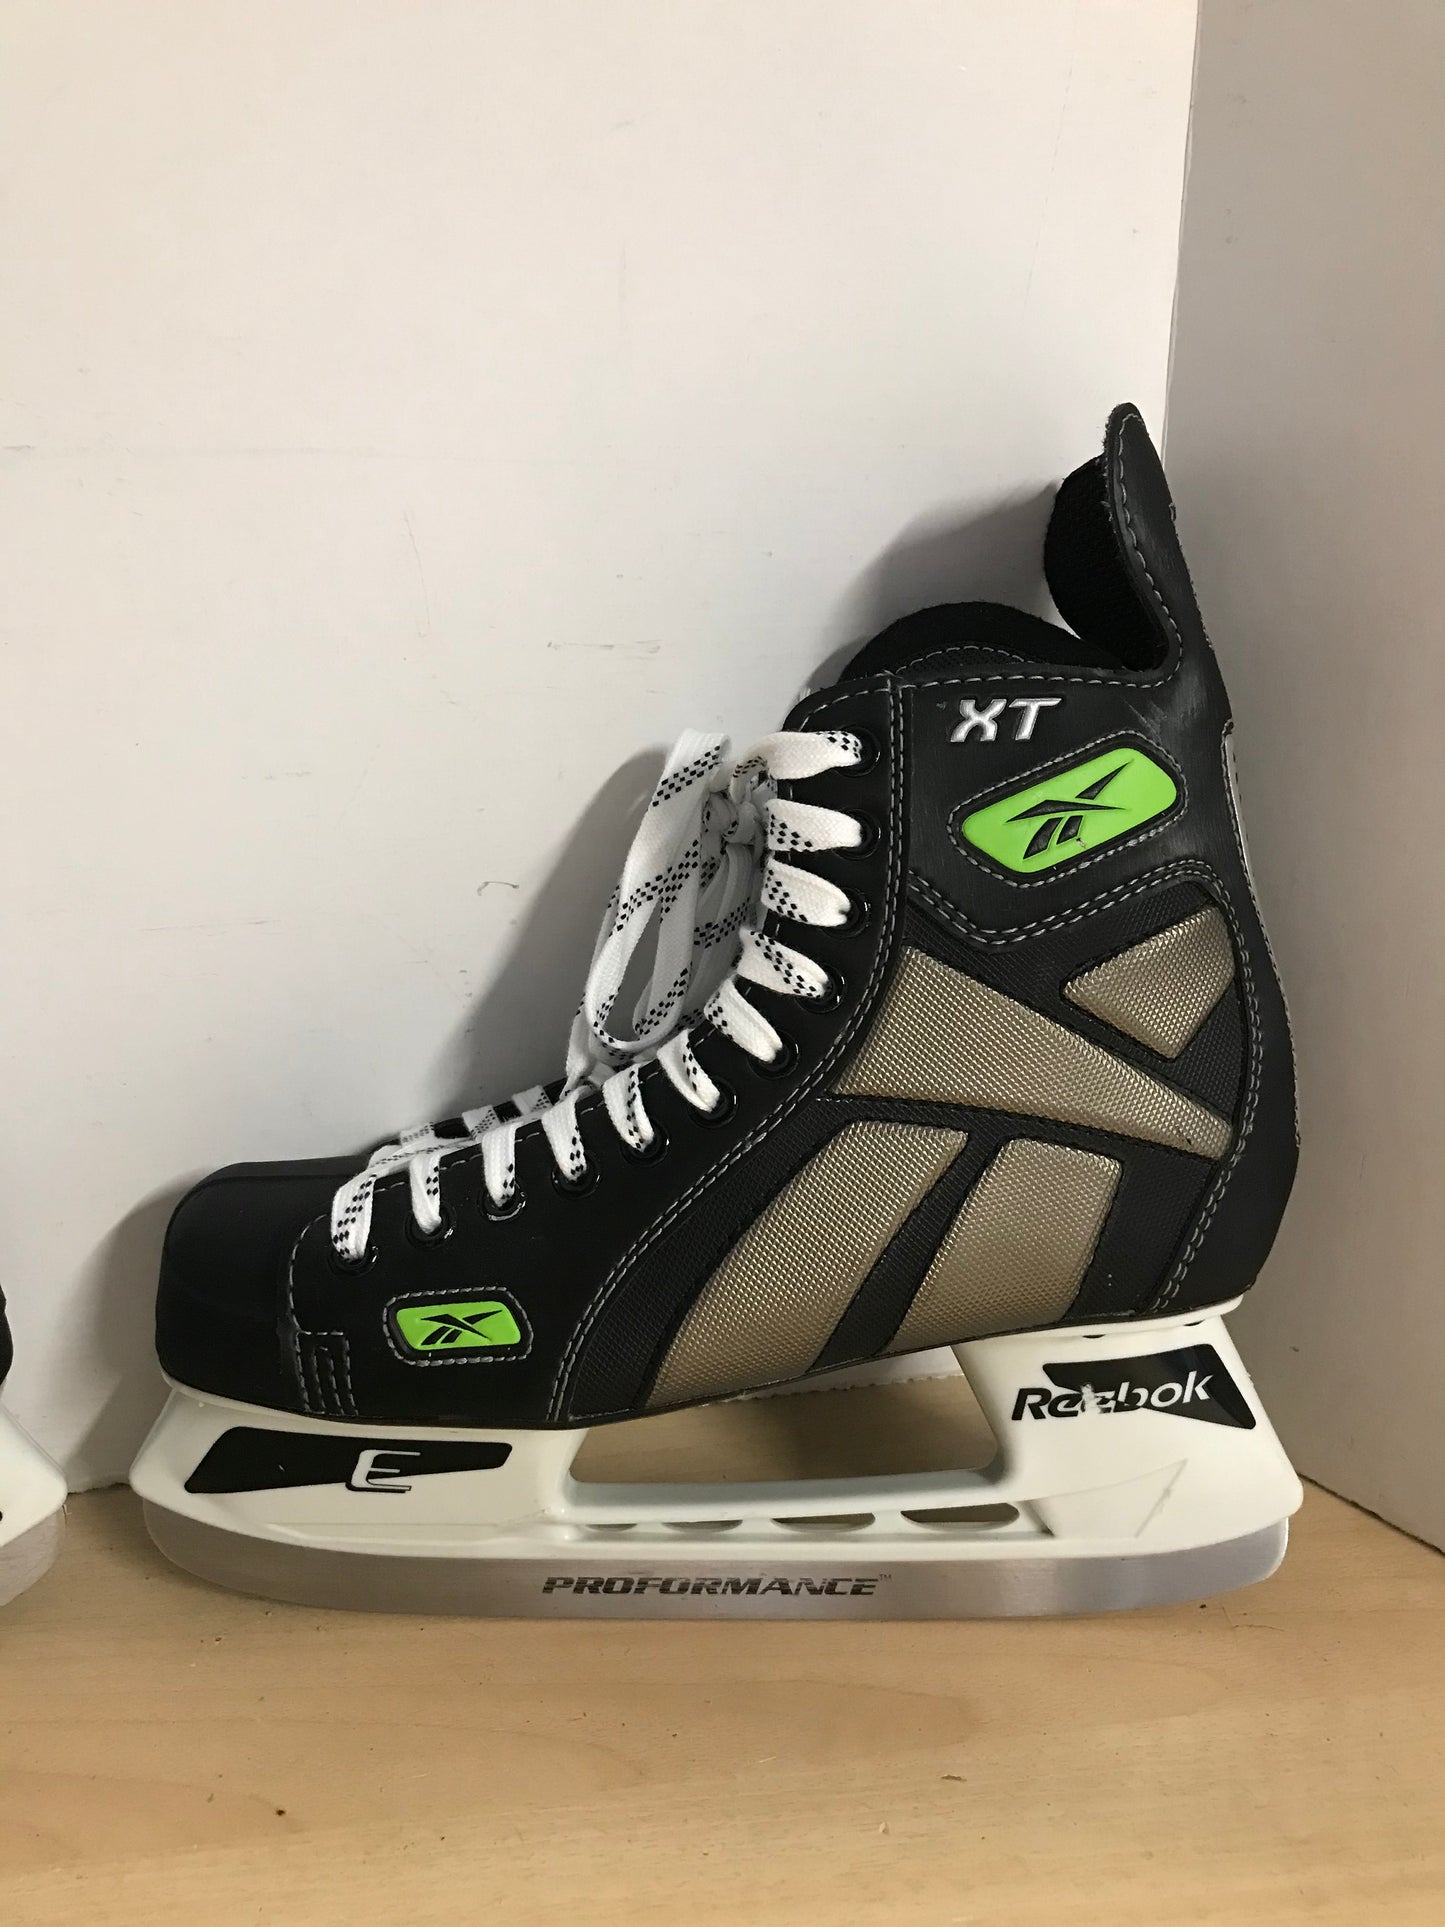 Hockey Skates Men's Size 8.5 Shoe Size Reebok XT As New BD 6084